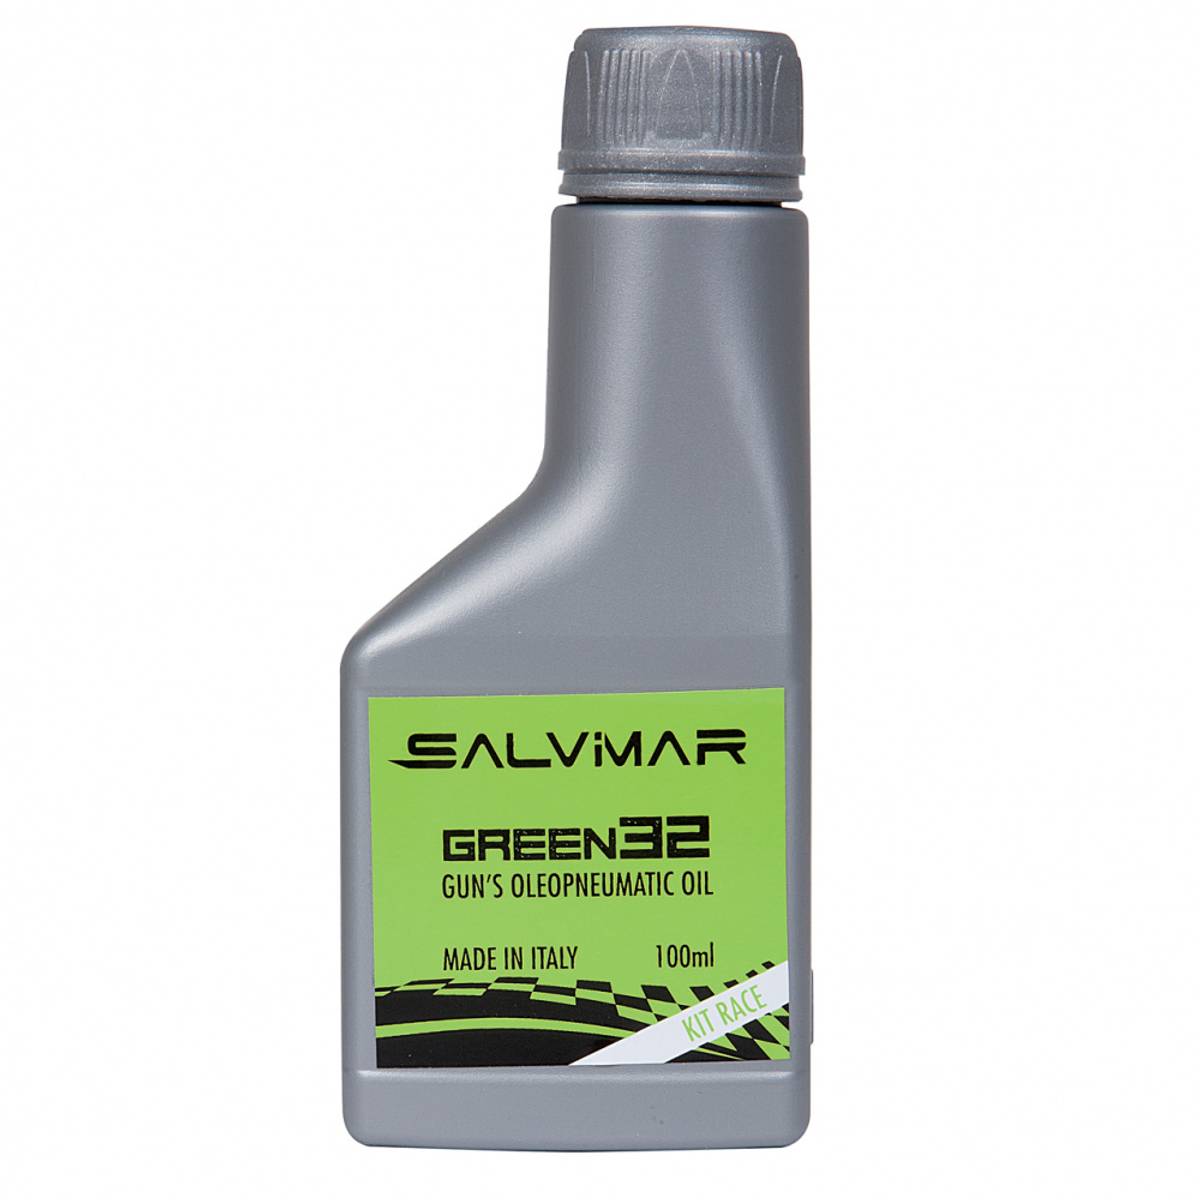 Salvimar harpoon oil Green32